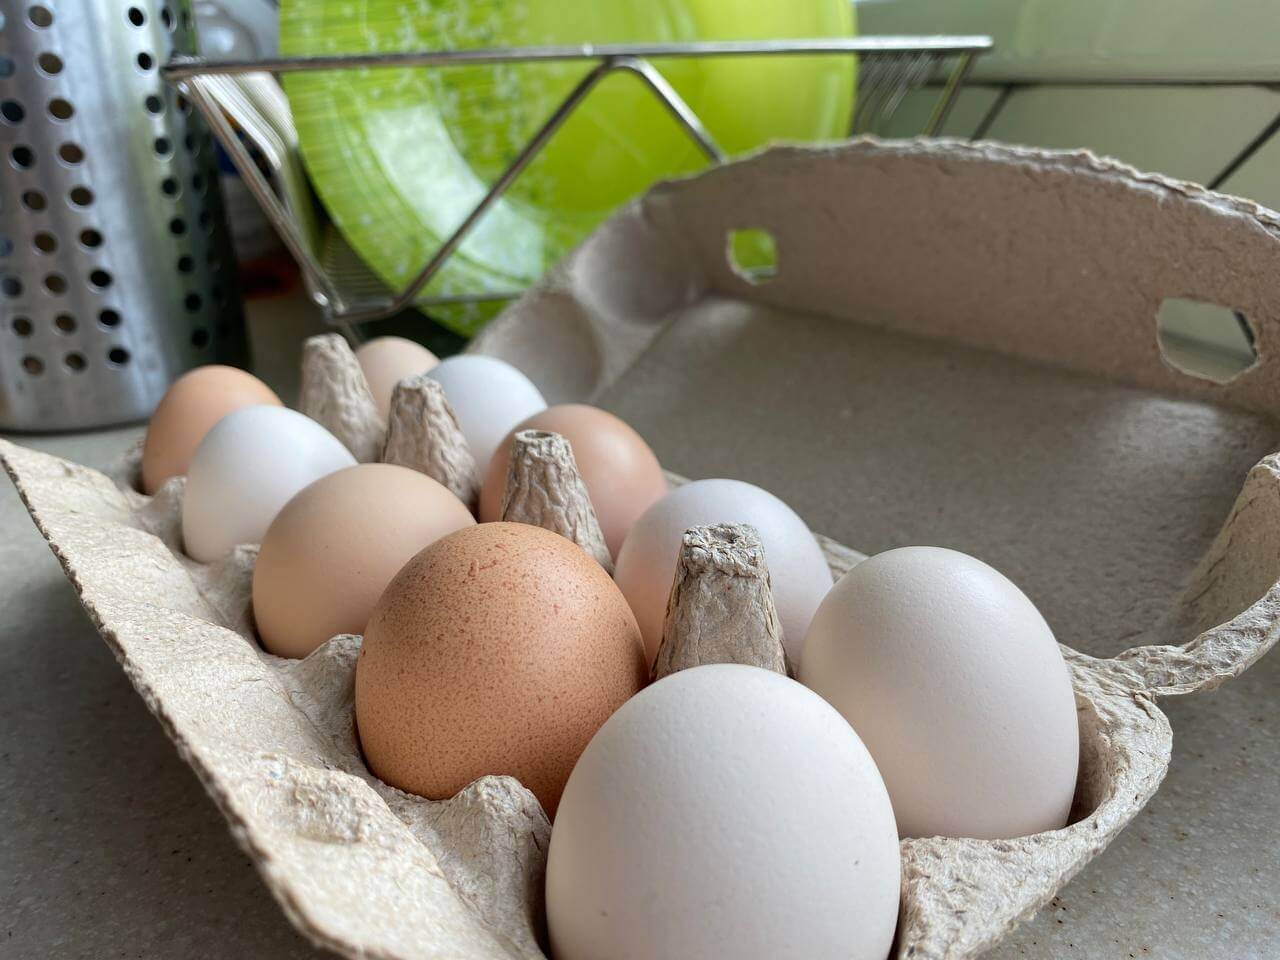 Производство яиц сократилось в Орловской области